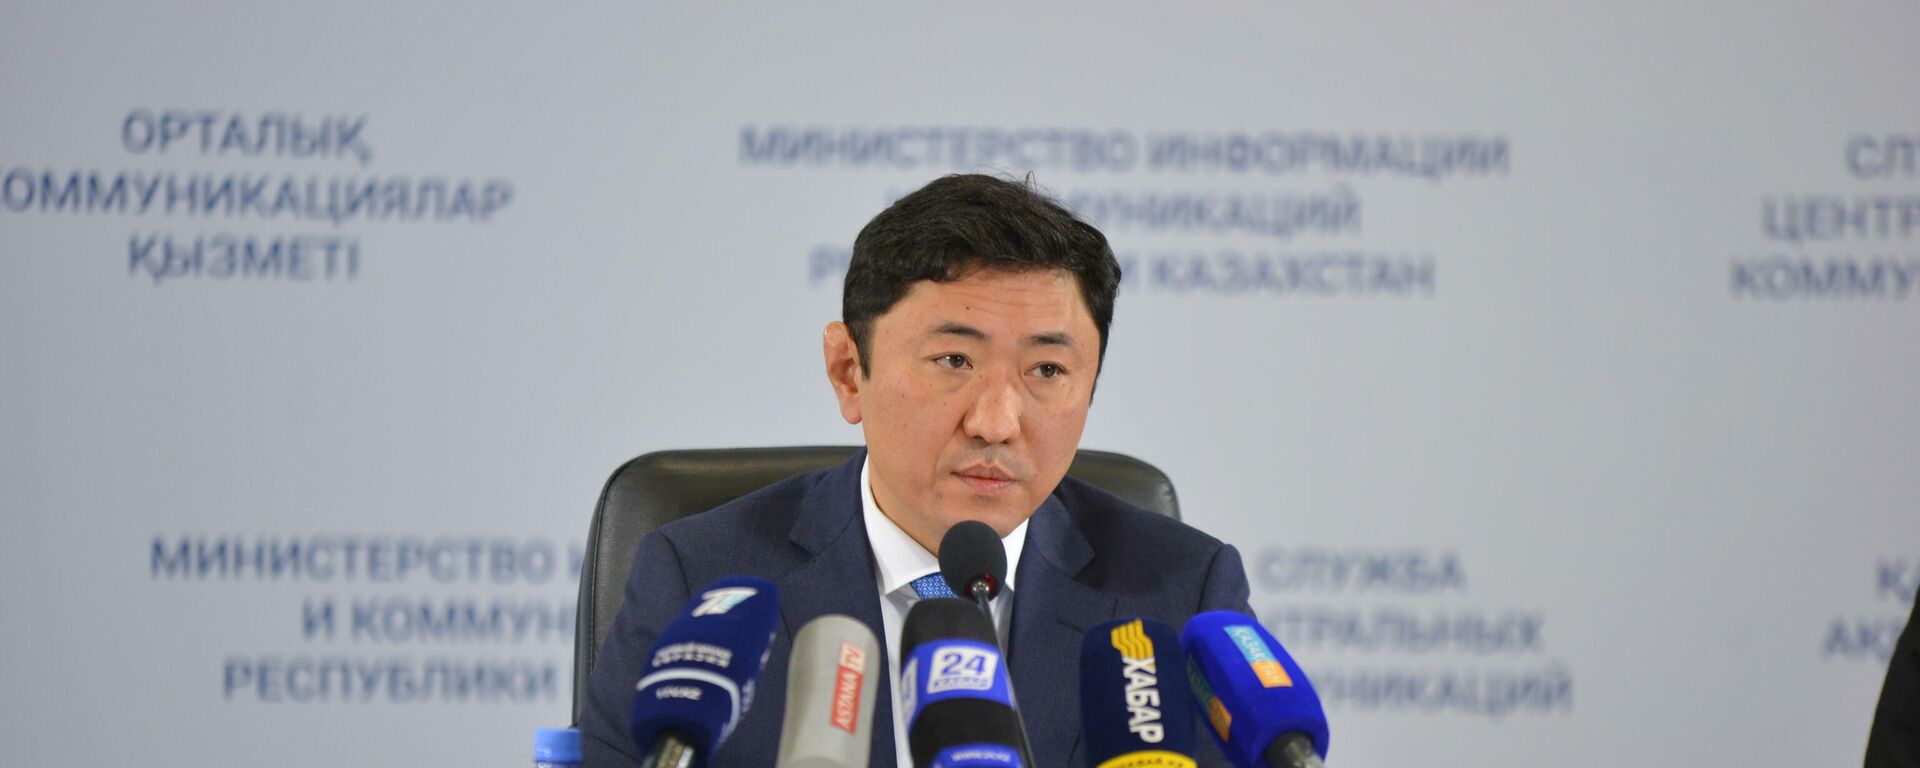 Глава Минэнерго высказался о новых ценах на топливо в Казахстане  - Sputnik Казахстан, 1920, 25.03.2022